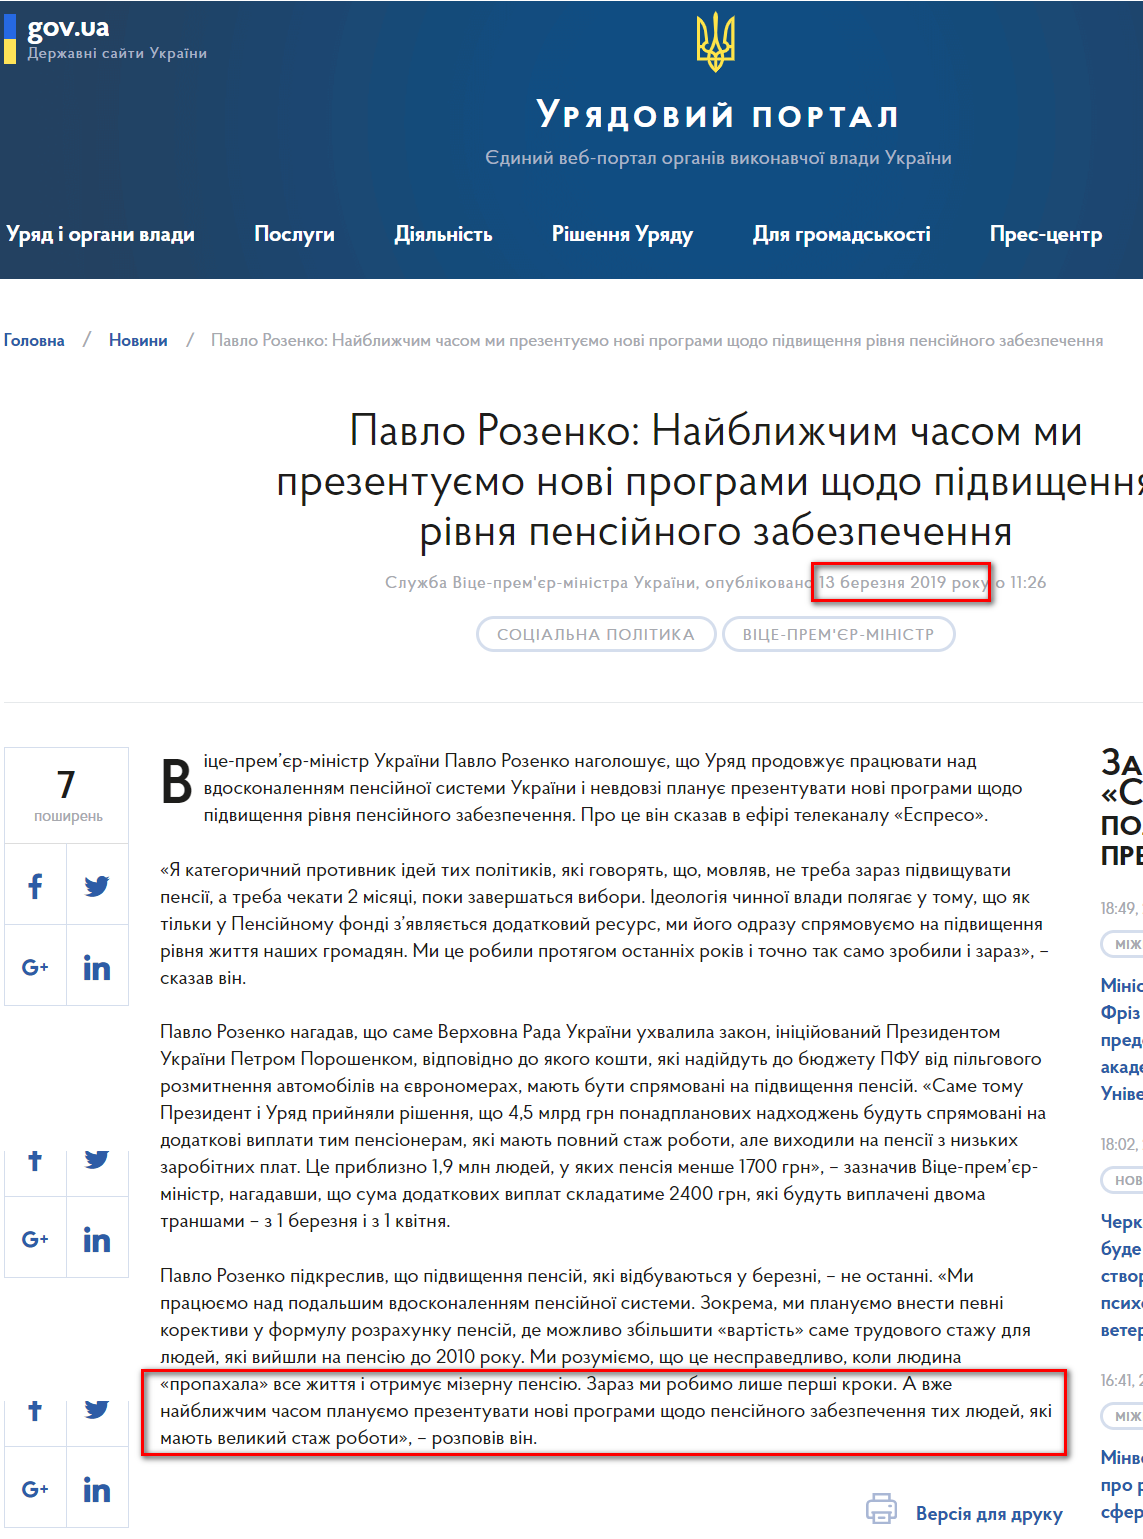 https://www.kmu.gov.ua/ua/news/pavlo-rozenko-najblizhchim-chasom-mi-prezentuyemo-novi-programi-shchodo-pidvishchennya-rivnya-pensijnogo-zabezpechennya